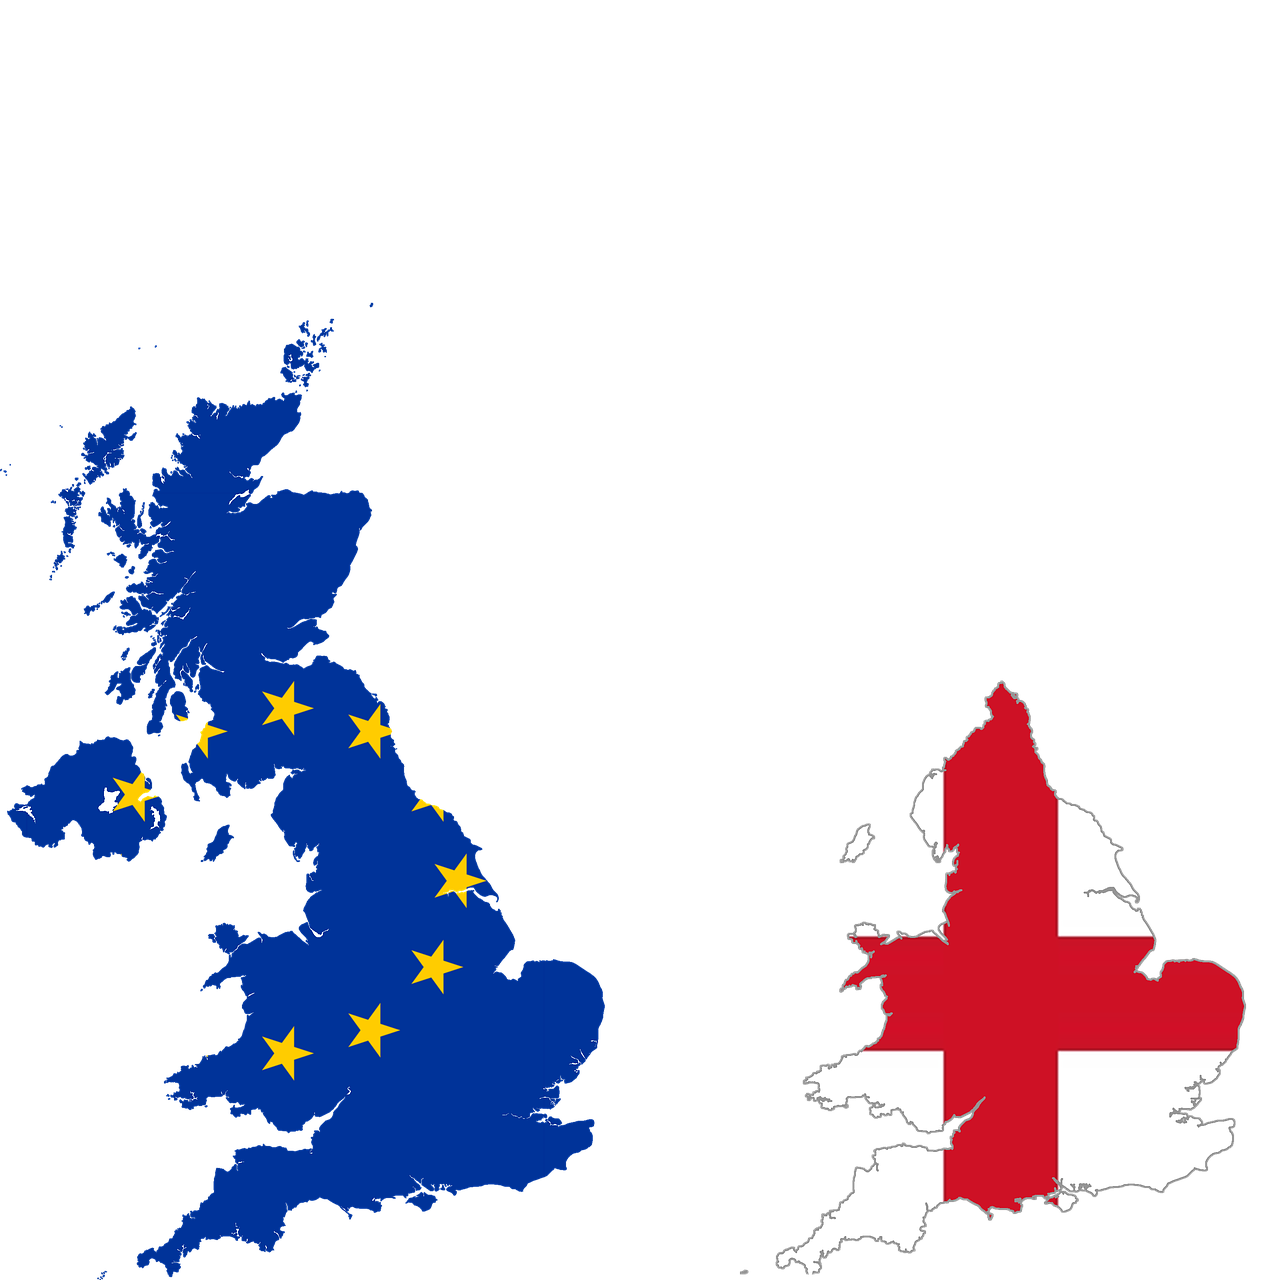 Brexit, Anglija, Eu, Jungtinė Karalystė, Europa, Vėliava, Sprendimas, Pasiūlytas Referendumas Dėl Jungtinės Karalystės Narystės Europos Sąjungos Referendume, Referendumas, Europos Sąjunga